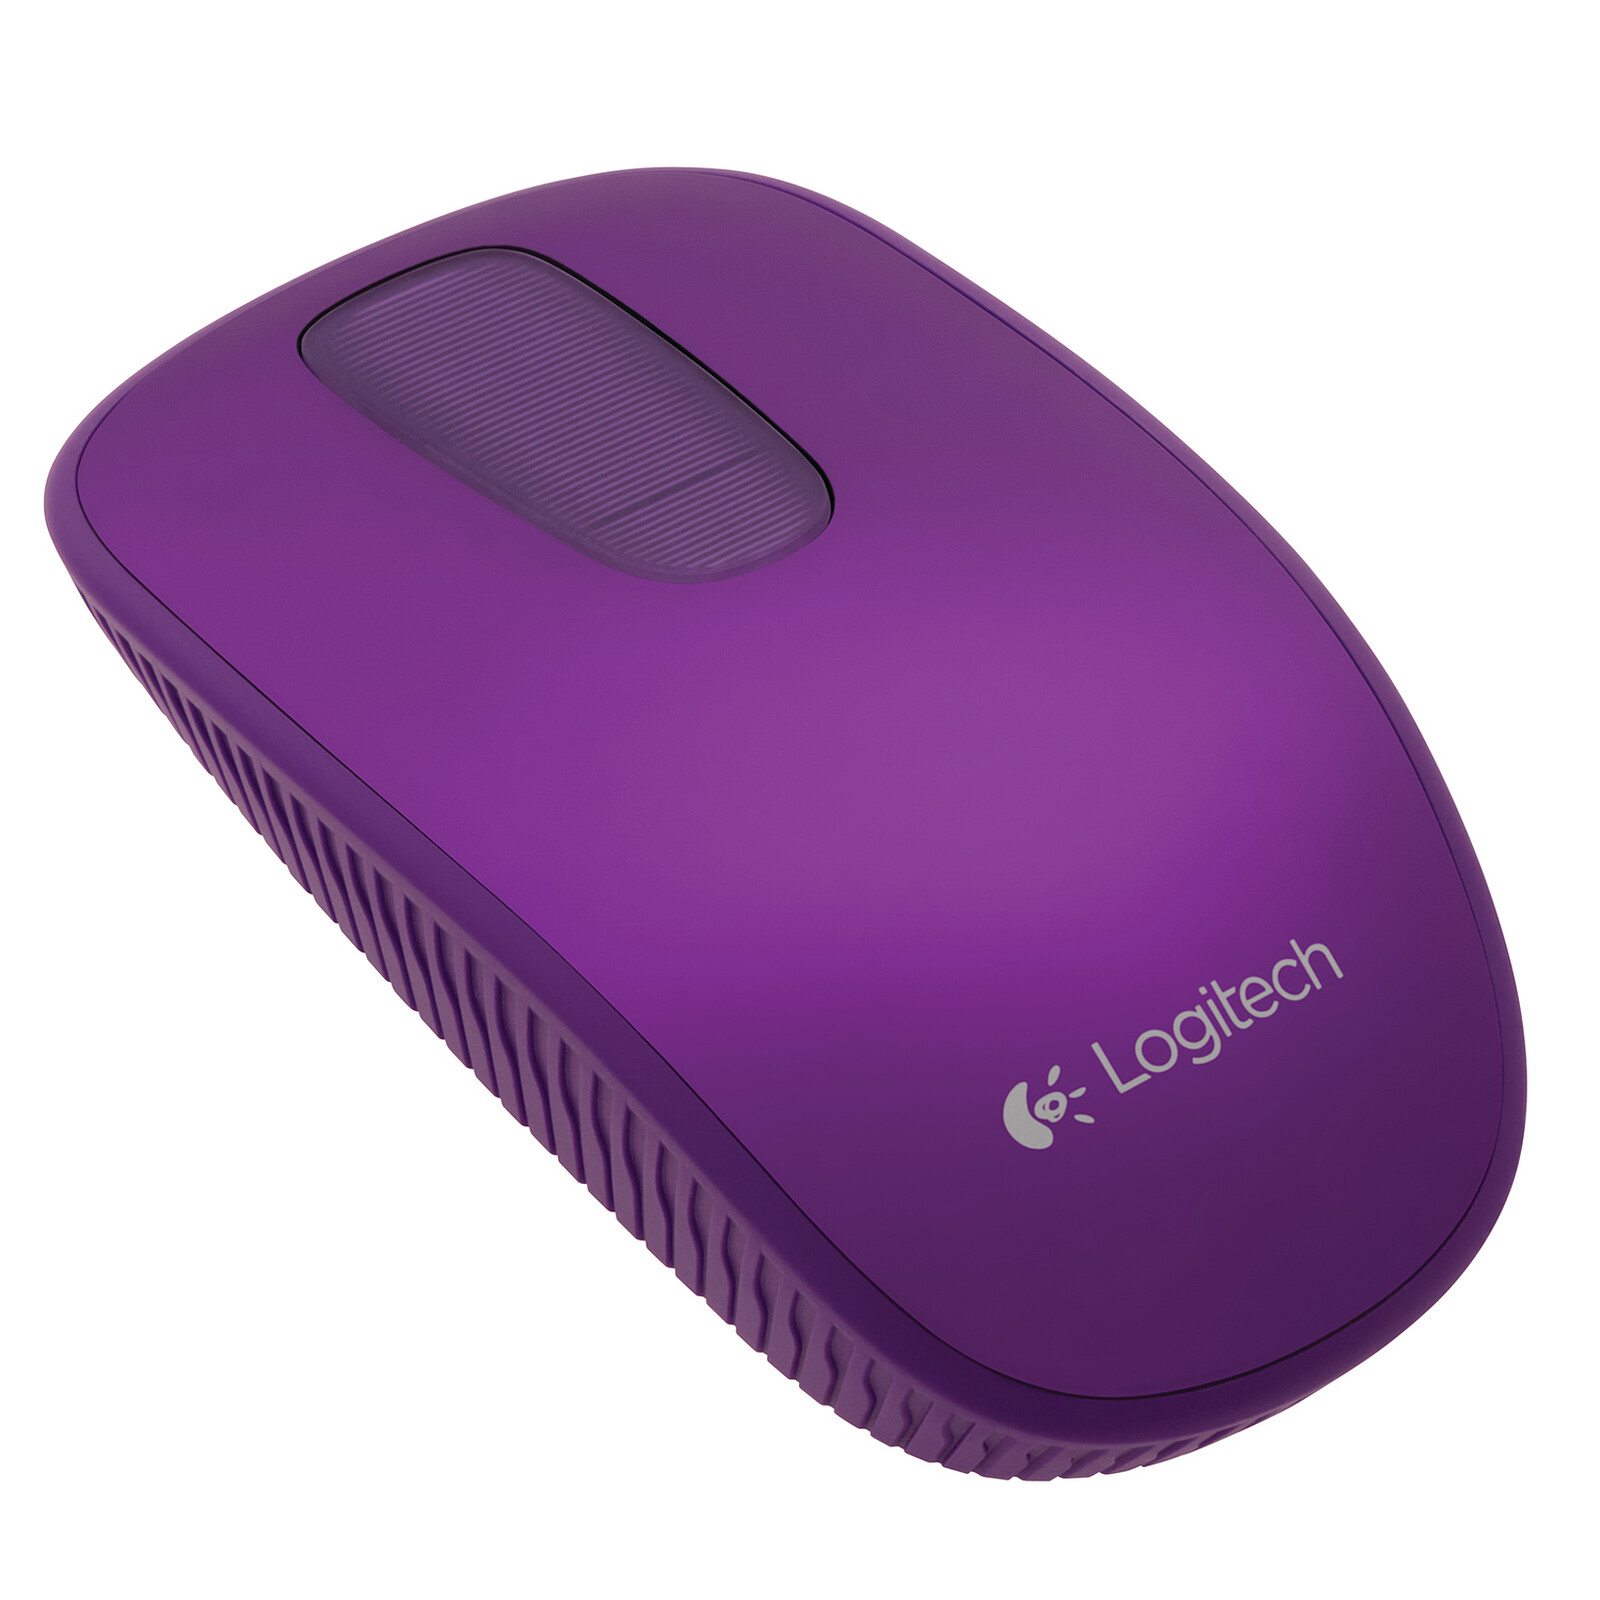 Logitech Souris Logitech zone touch mouse t400 